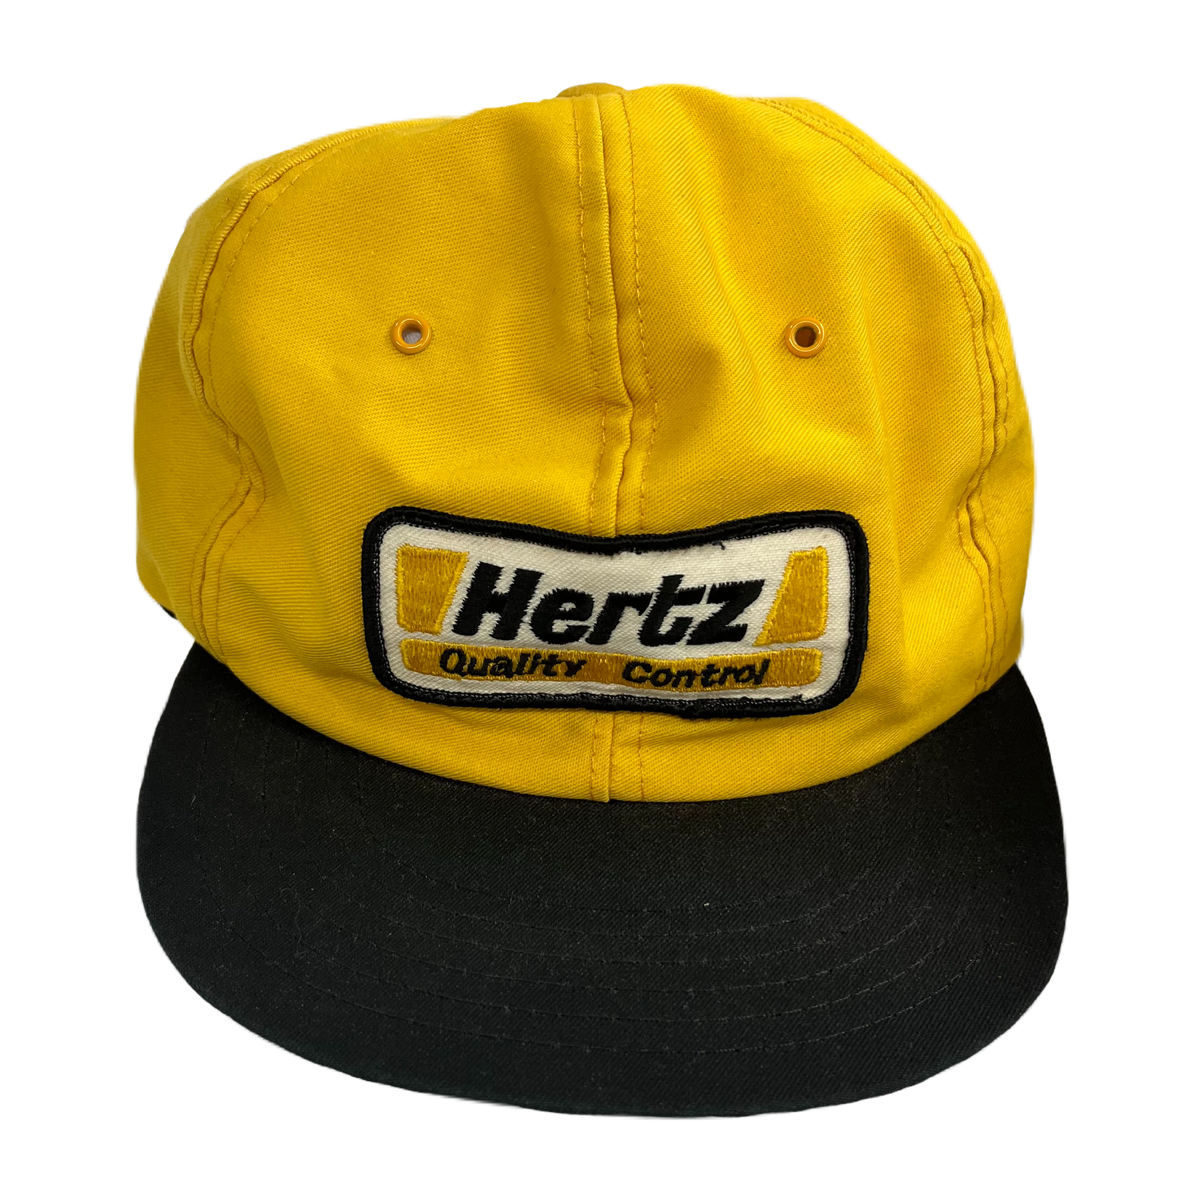 Vintage Hertz &quot;Quality Control&quot; Hat